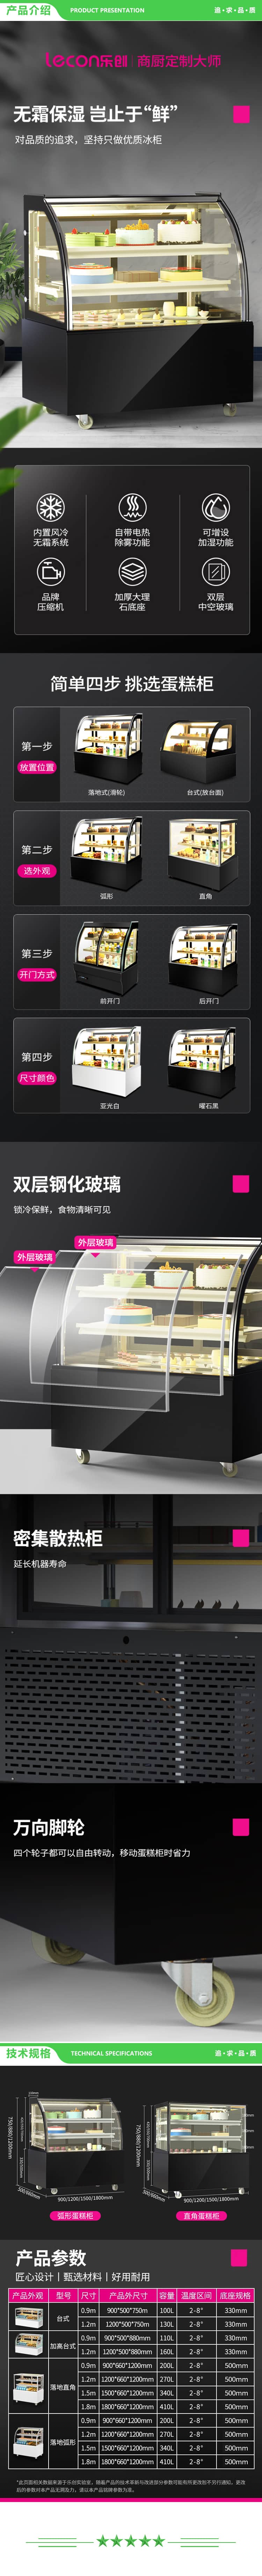 乐创 lecon YM-FLZG-18 蛋糕柜展示柜商用水果保鲜柜冷藏寿司饮料熟食玻璃(白色弧形1.8米落地式) 2.jpg